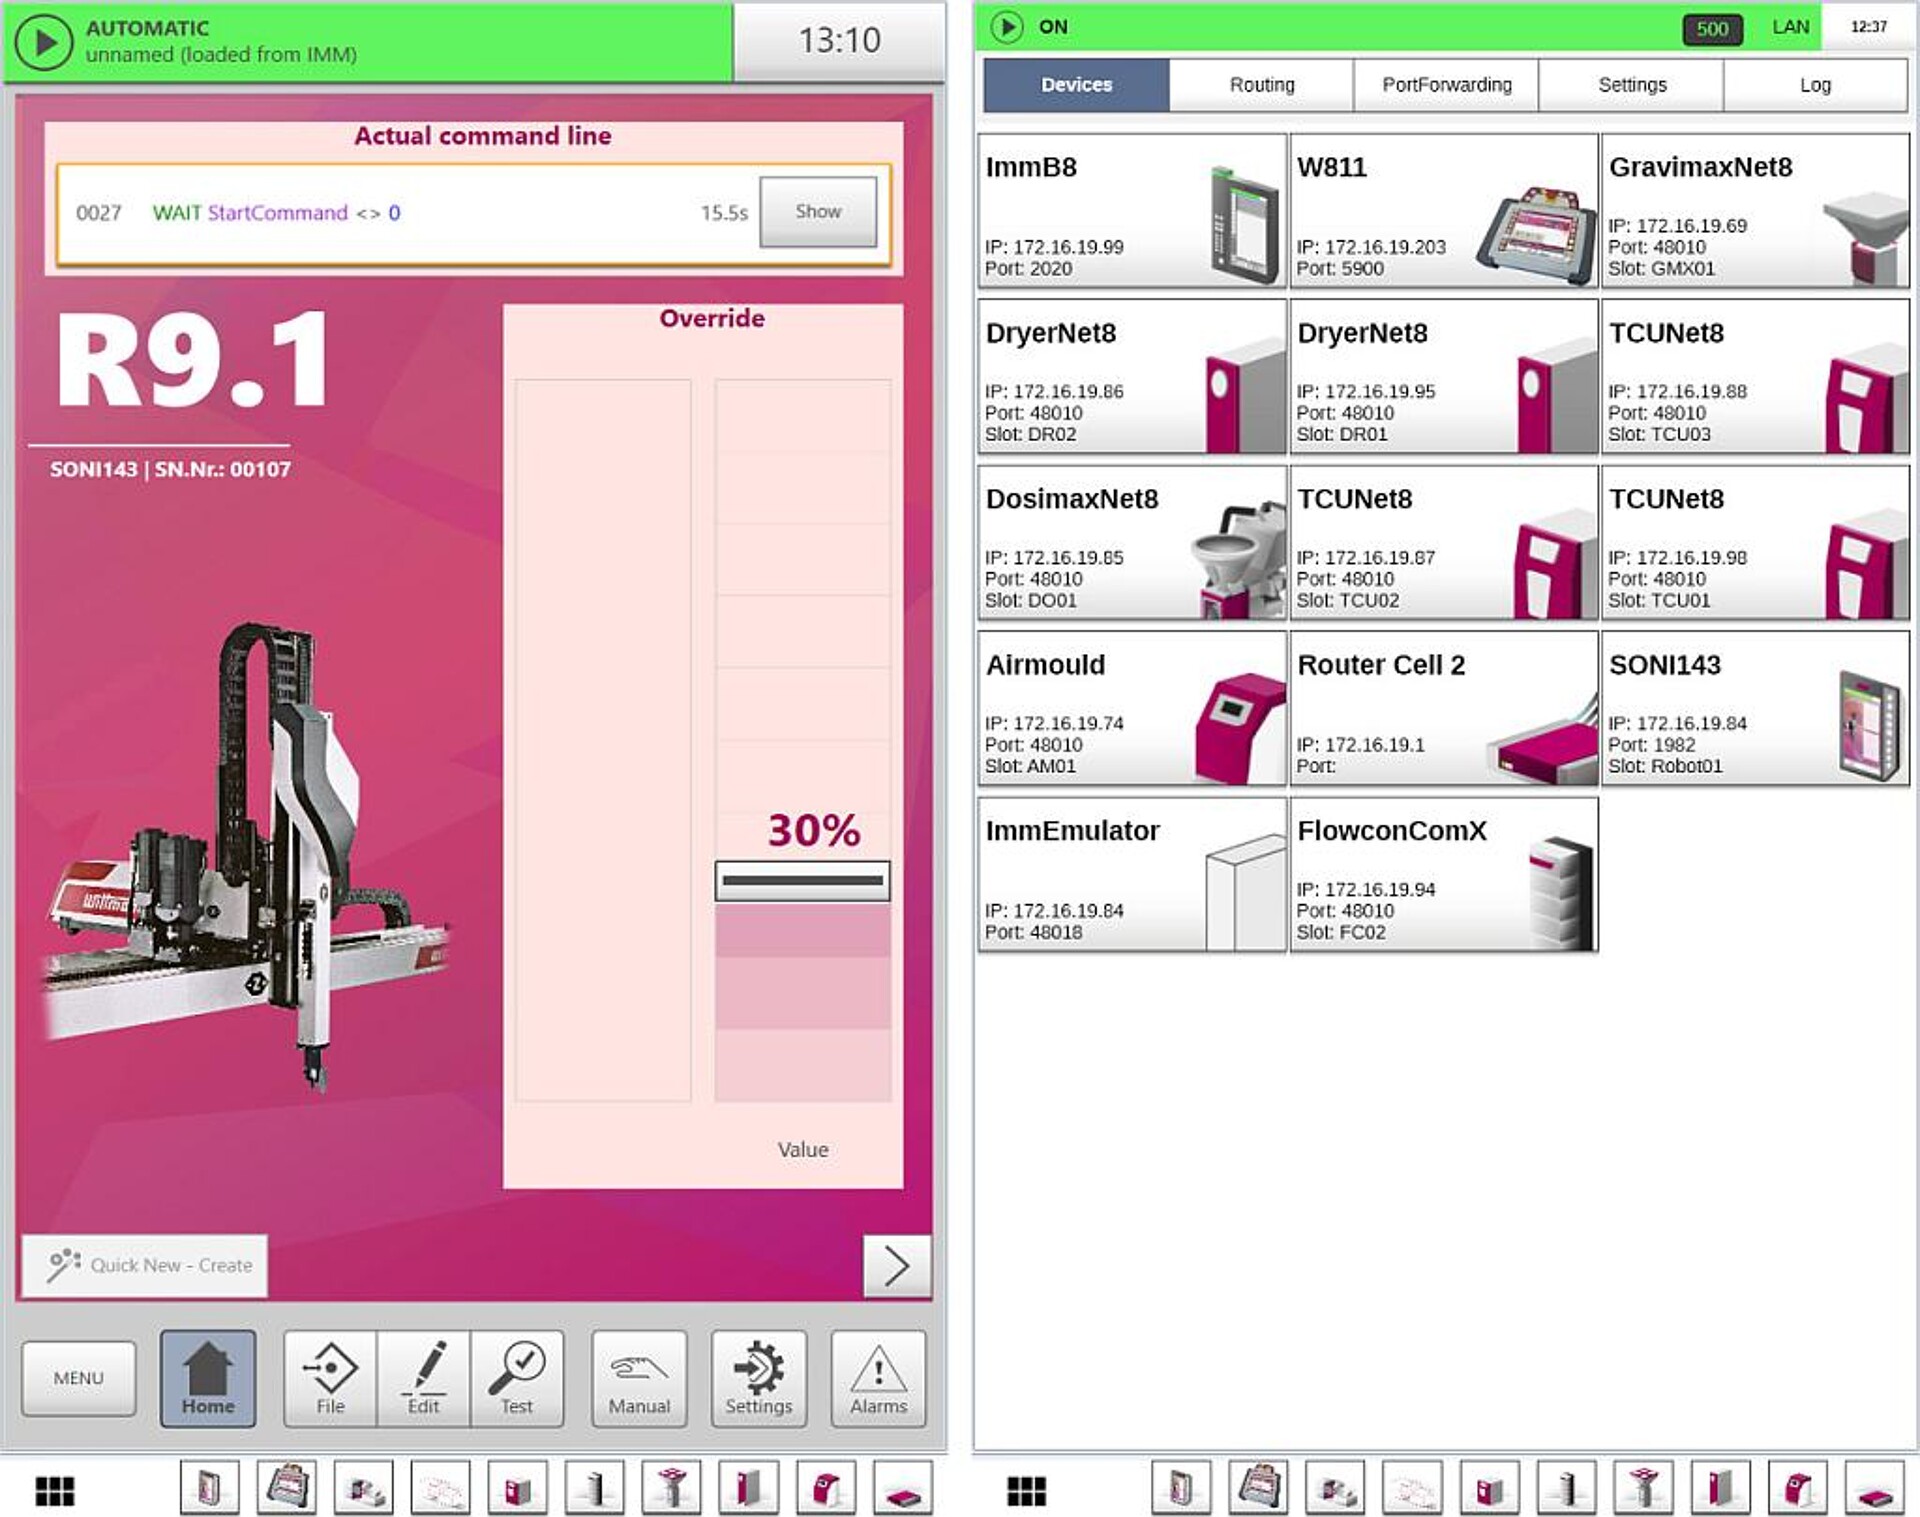  Zwei Bildschirmansichten der WCR TeachBox (von links nach rechts): Roboter im Automatikmodus, Bildschirmoberfläche des Wittmann 4.0 Routers. Am unteren Bildschirmrand ist jeweils die Taskbar angezeigt. (Abb.: Wittmann)